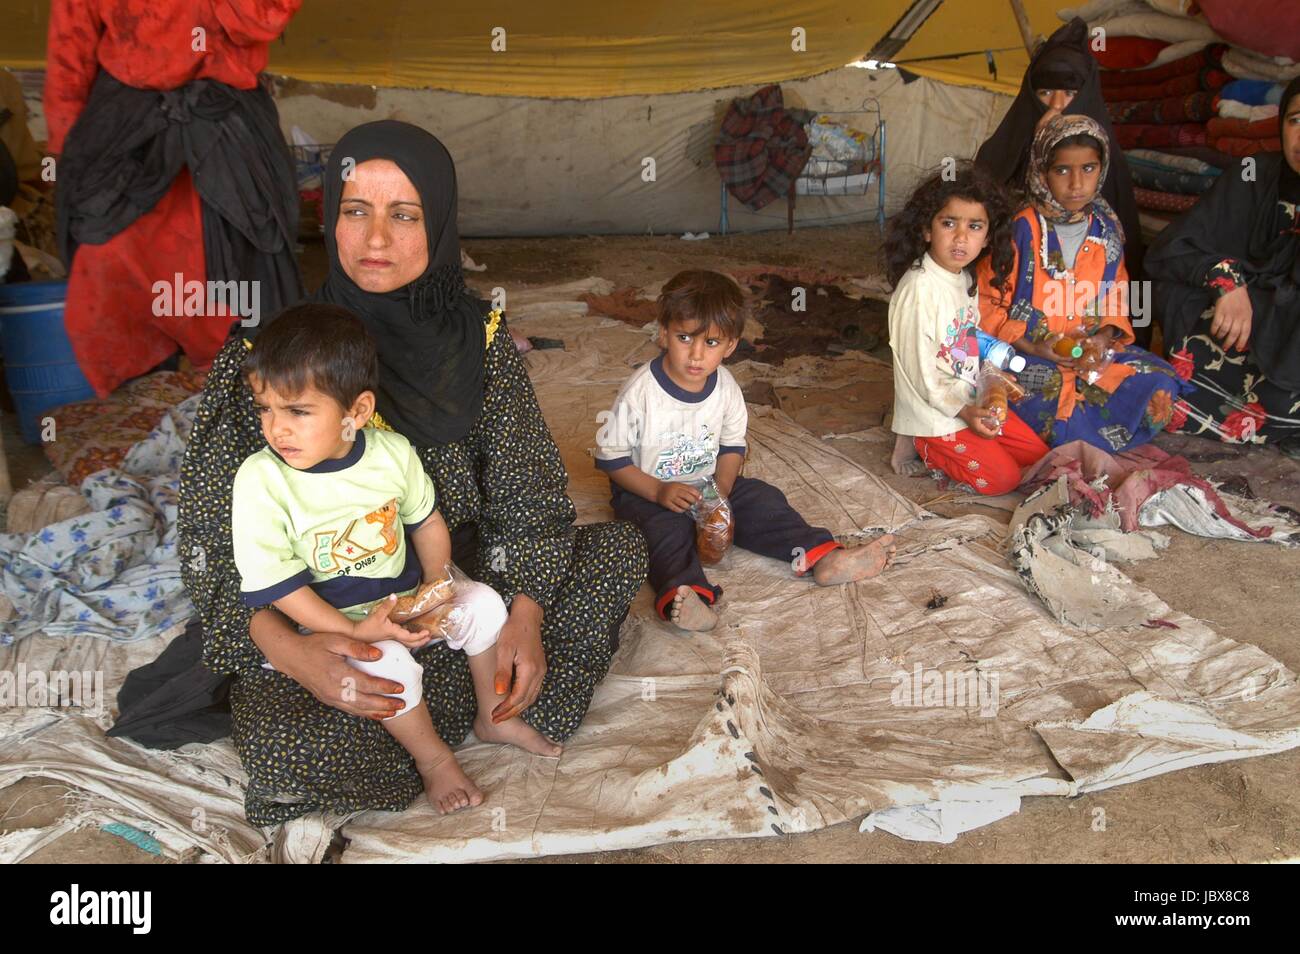 L'Iraq, nomades bédouins campent dans la périphérie de la ville de Nassiriya Banque D'Images